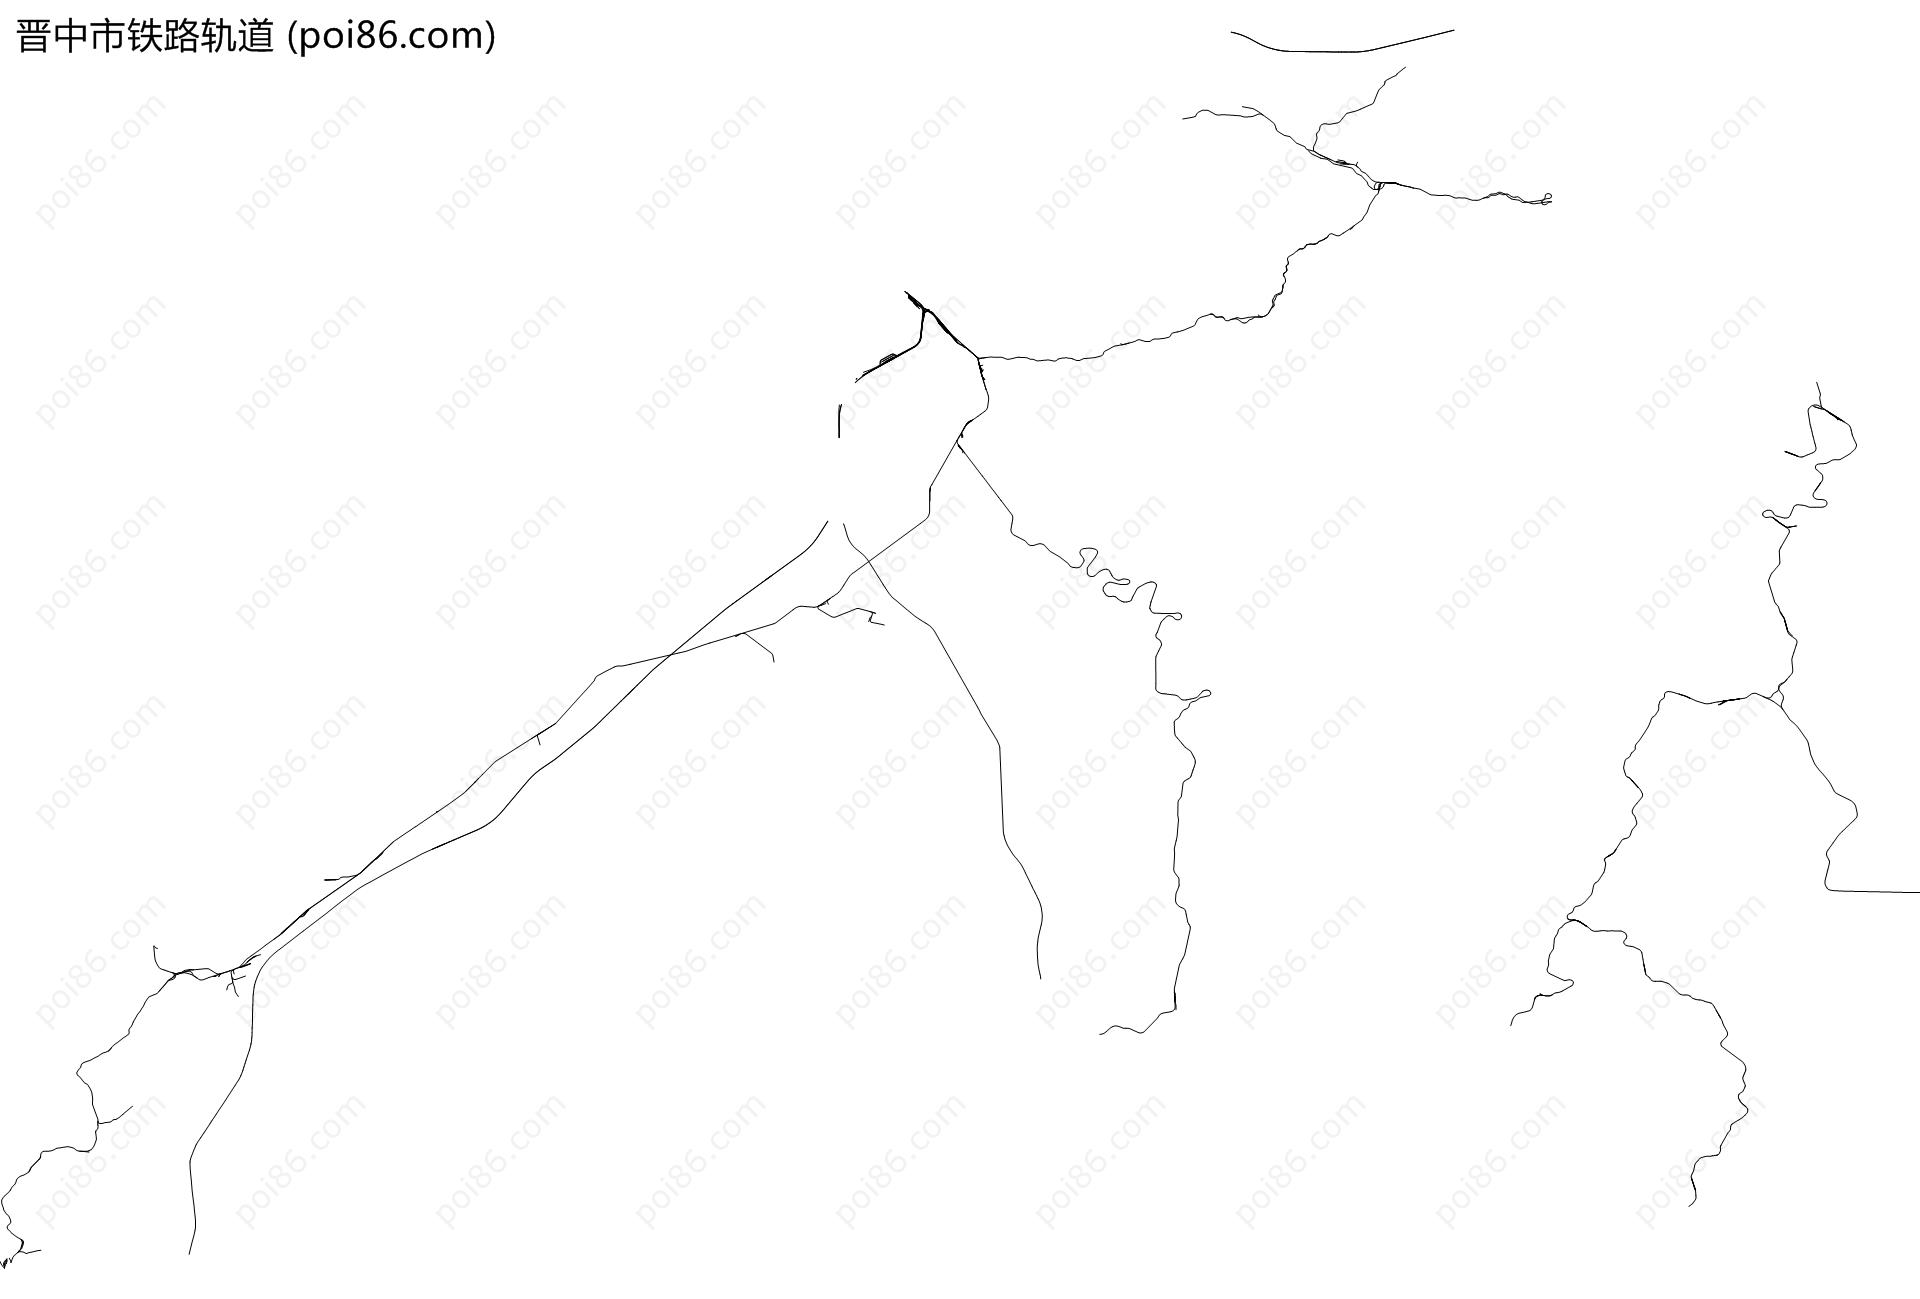 晋中市铁路轨道地图